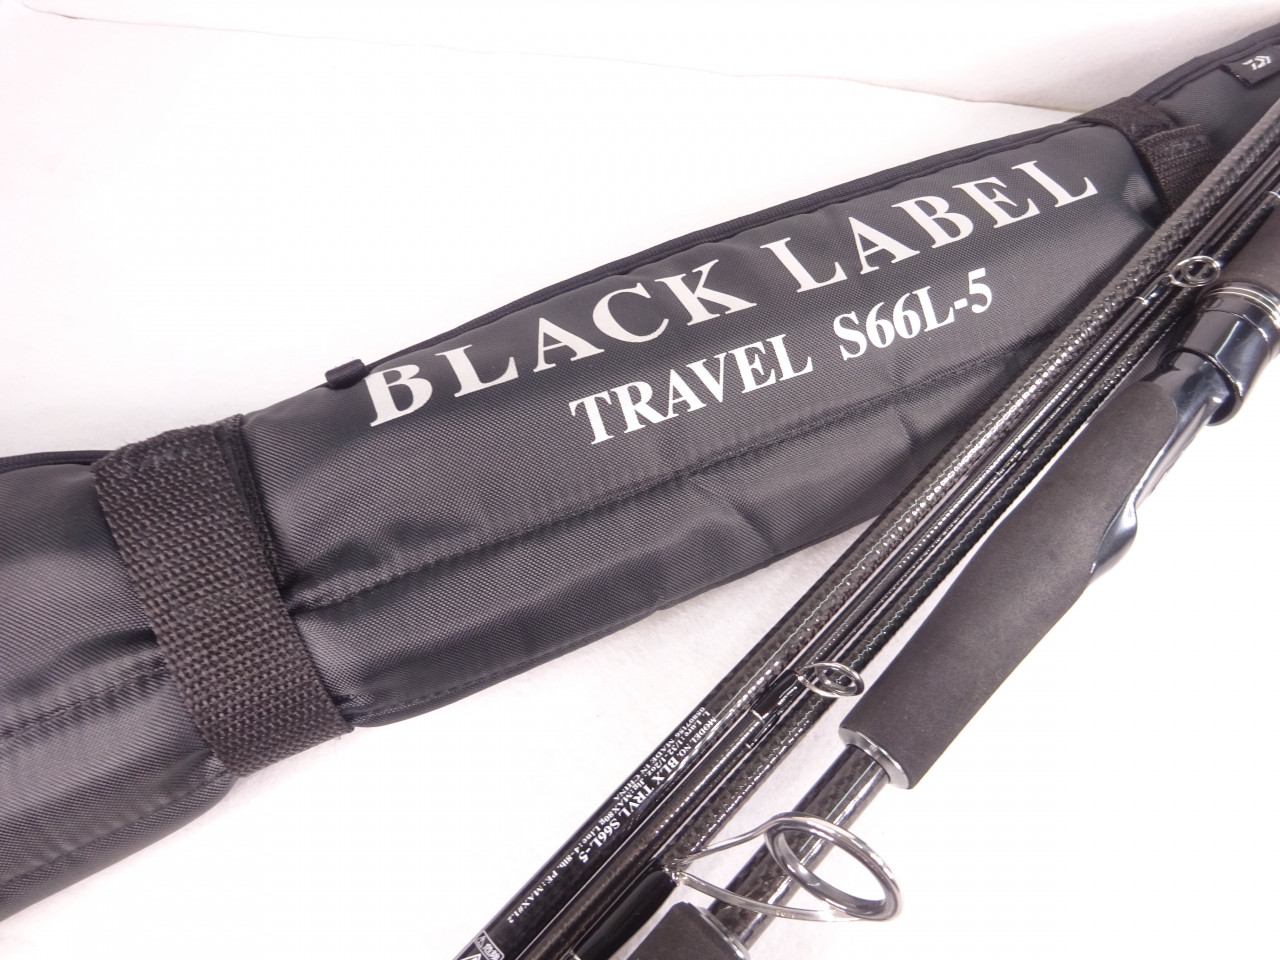 【NEW新品】ダイワ ブラックレーベル トラベル S66L-5【 バーサタイルスペシャル】 ロッド